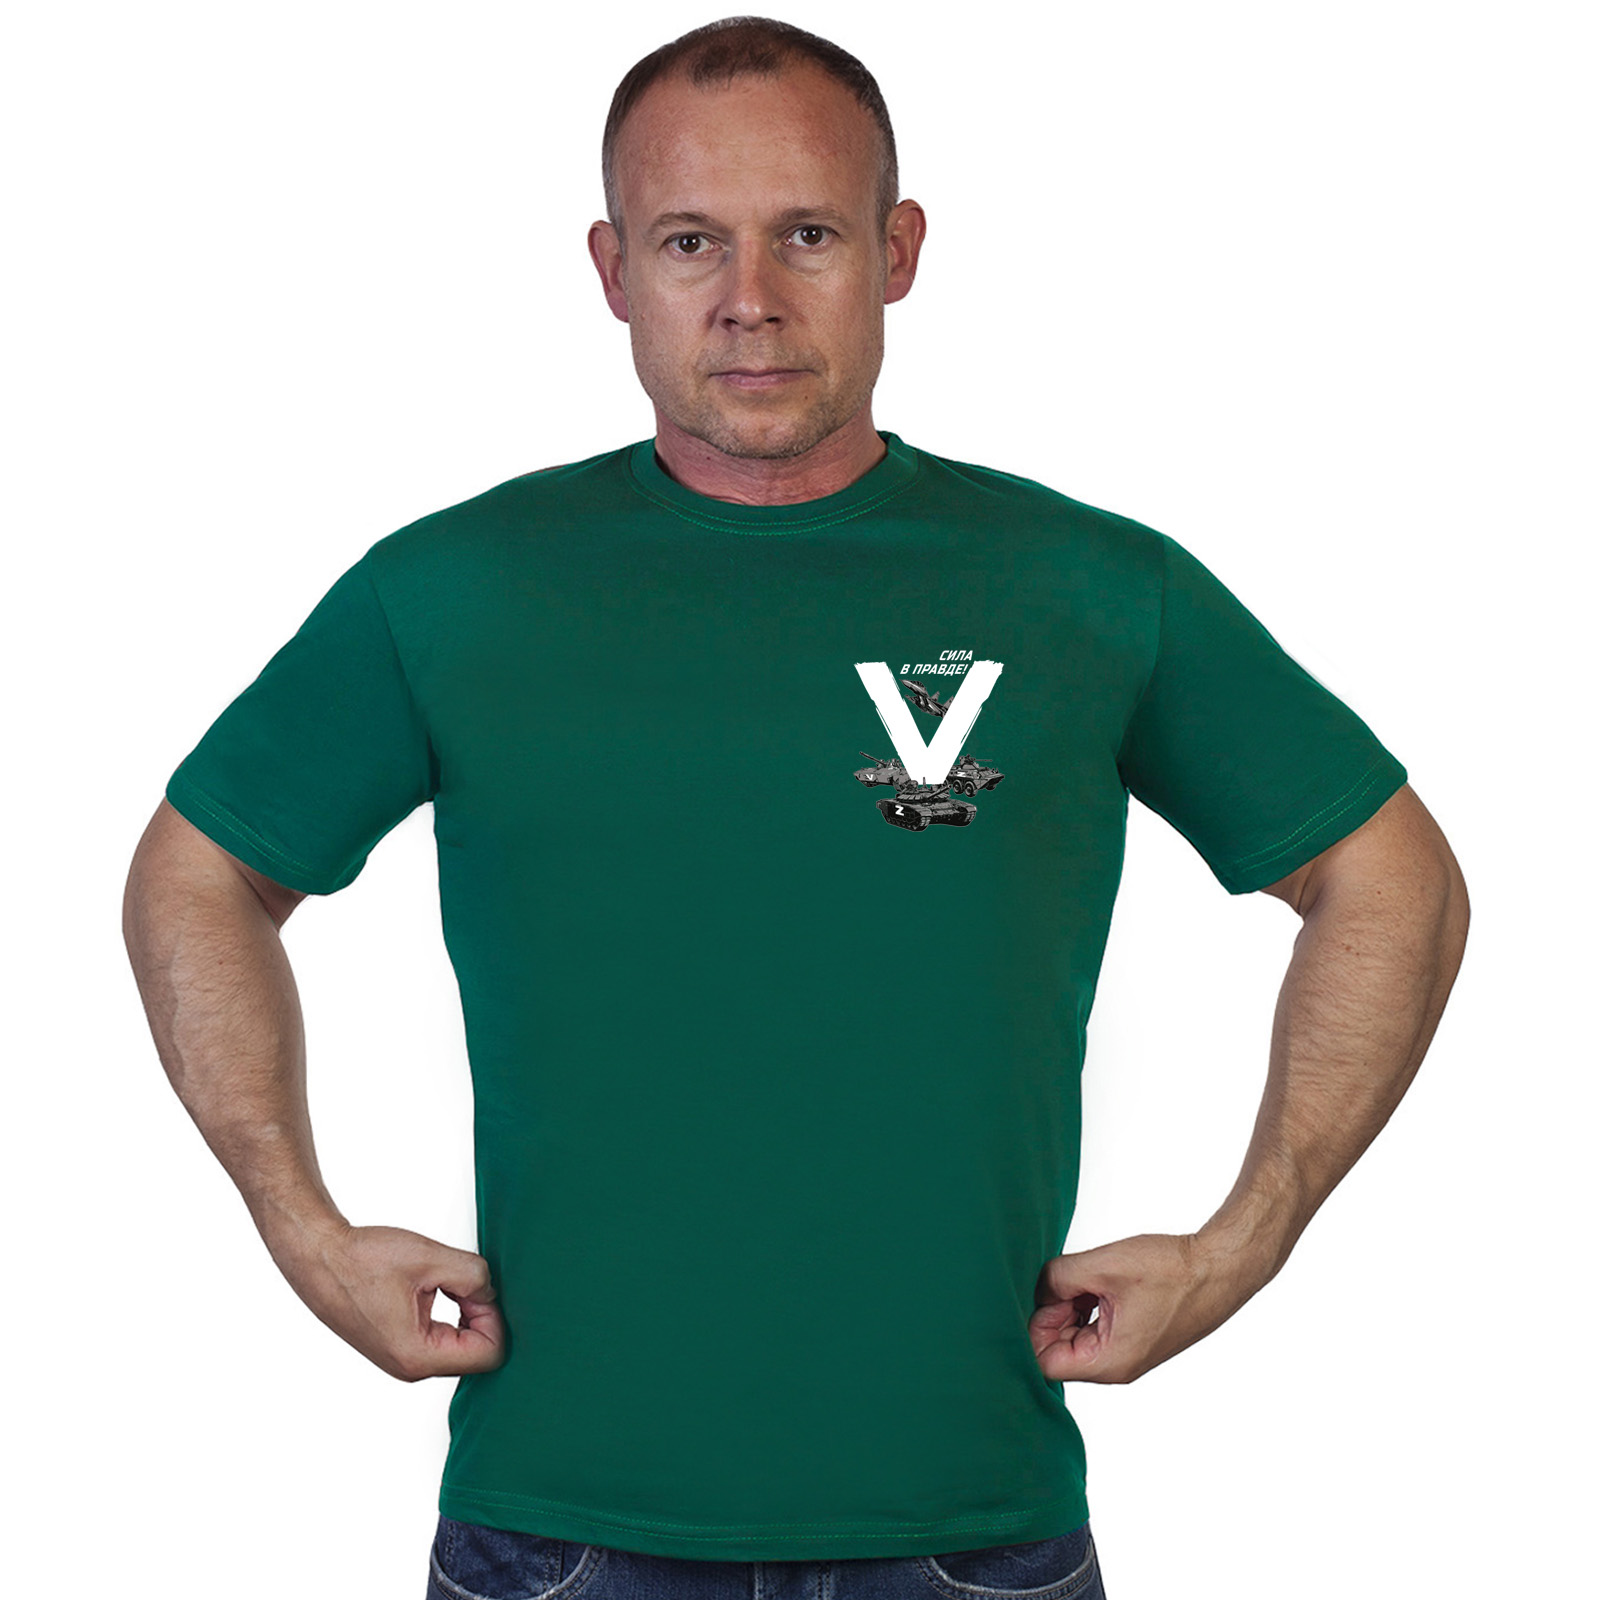 Зелёная футболка с термоаппликацией V "Сила в правде!"